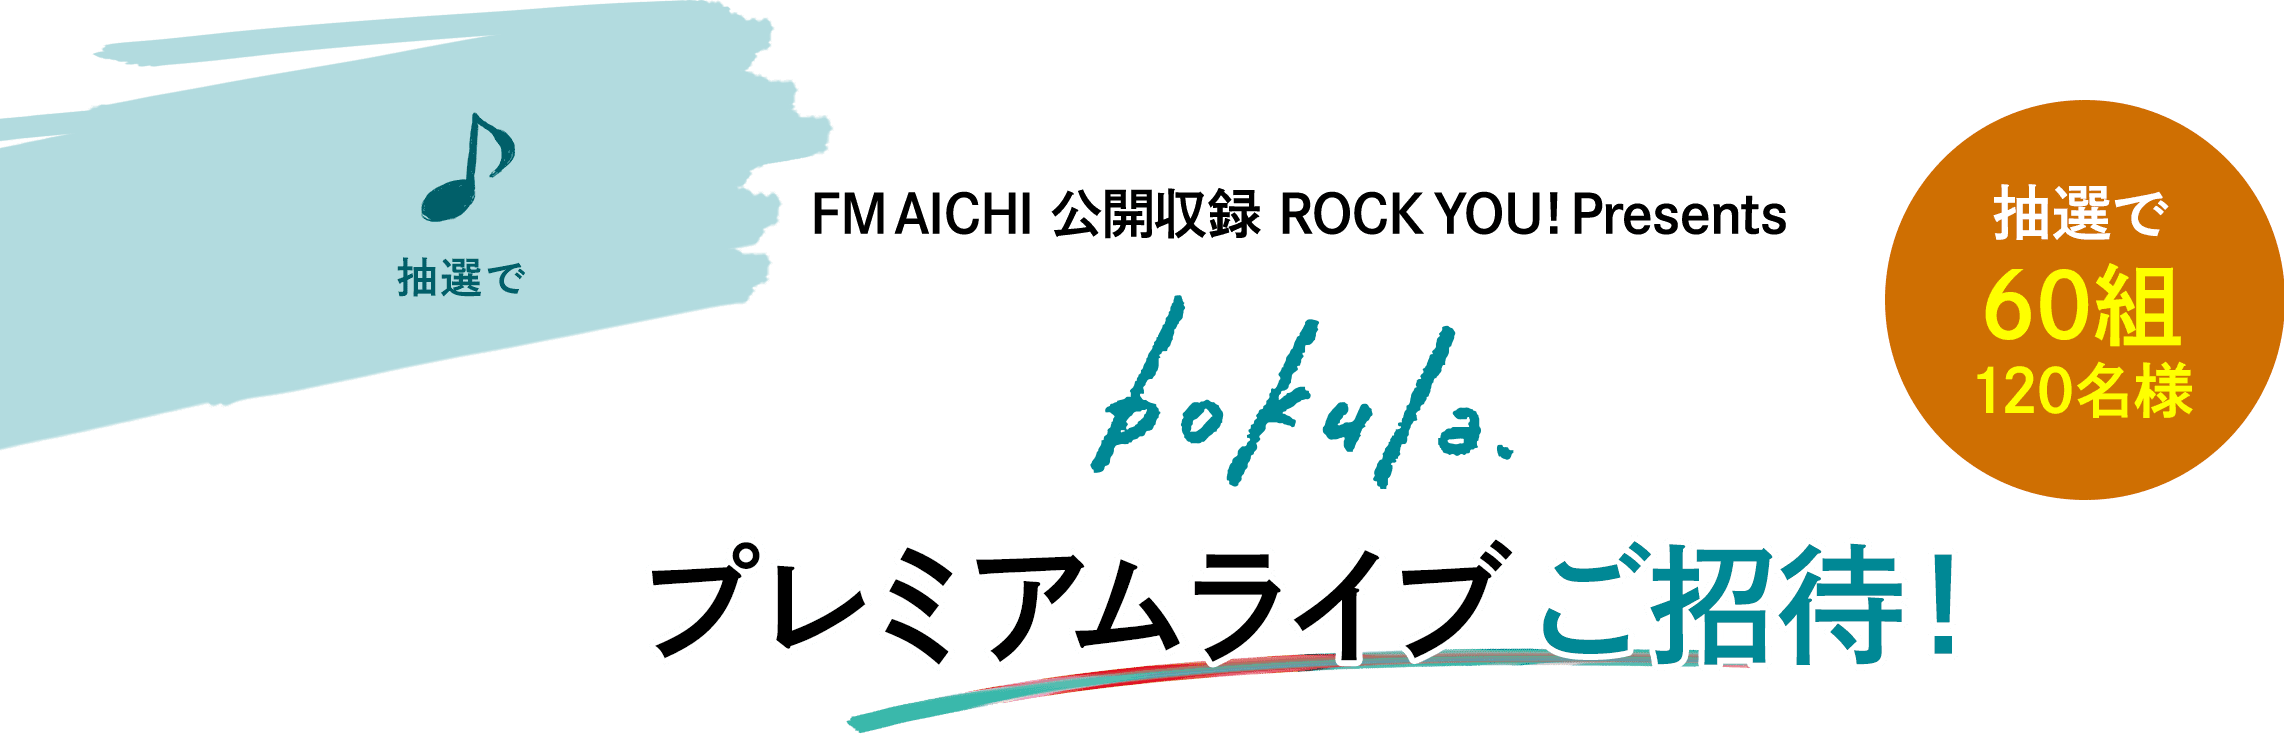 抽選で FM AICHI 公開収録 ROCK YOU! Presents bokula. プレミアムライブご招待！抽選で60組120名様